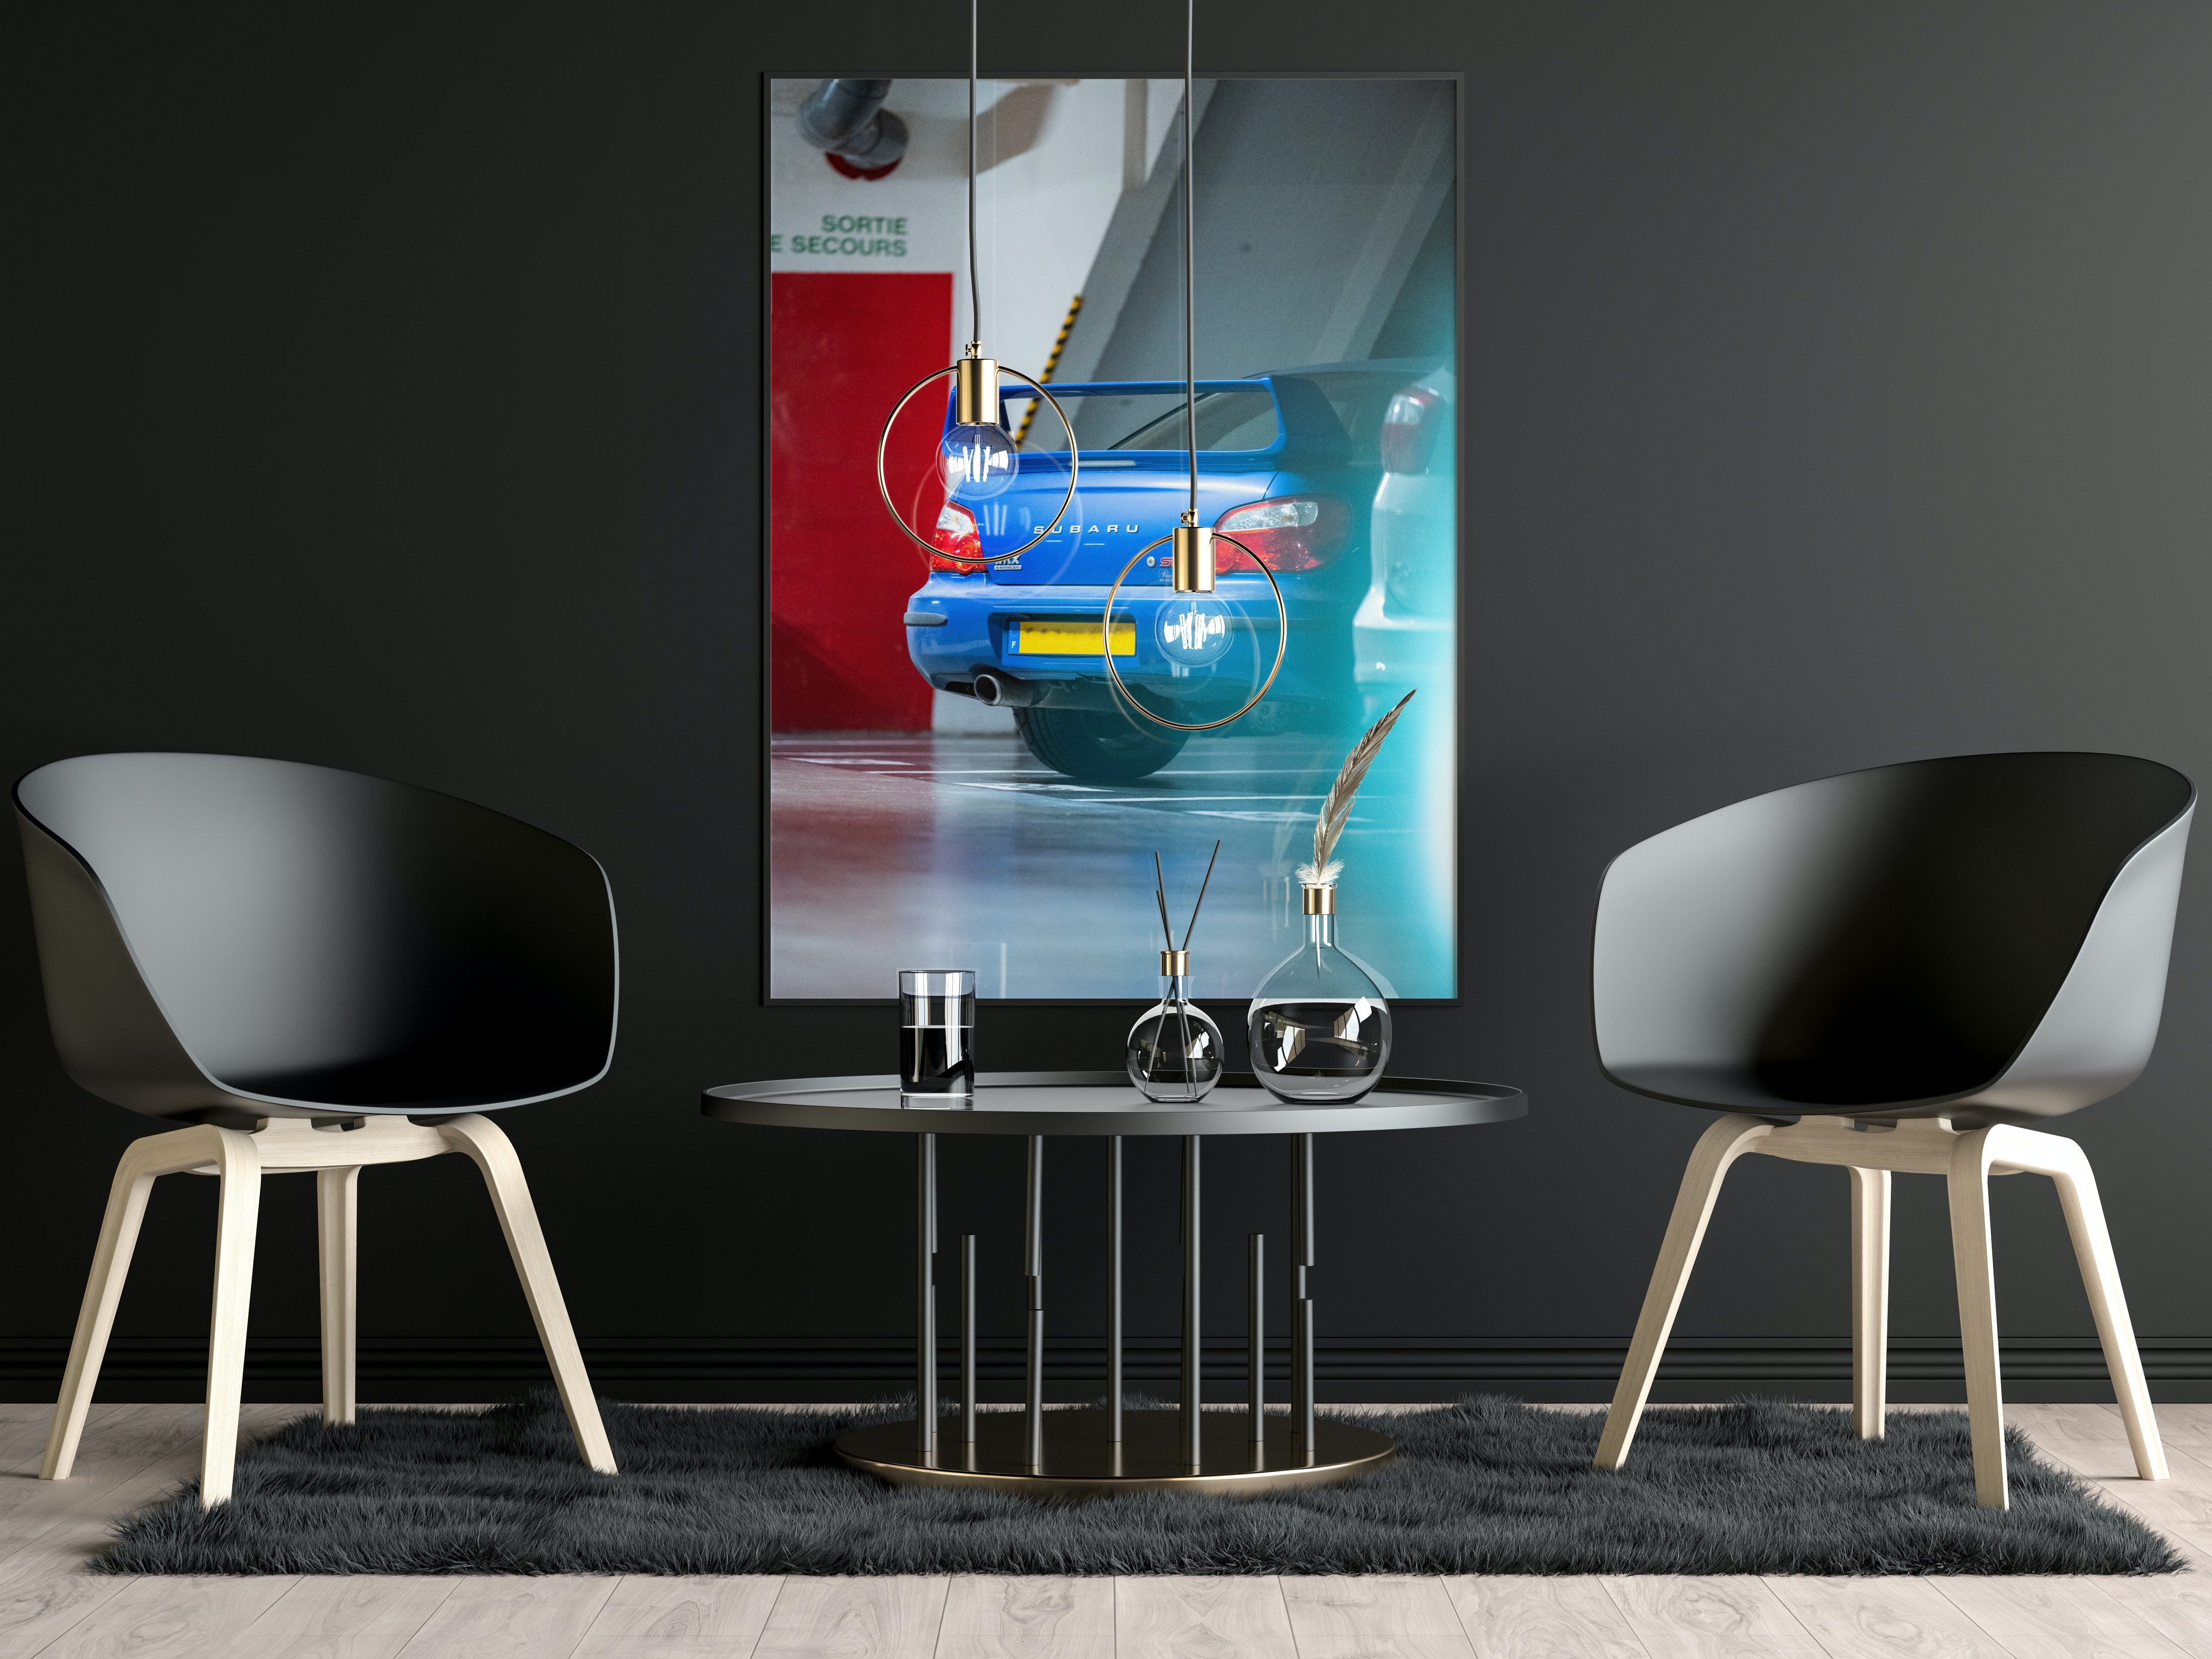 Poster mural - Subaru Impreza – Photographie de voiture – Poster photo, poster XXL, photographie murale et des posters muraux unique au monde. La boutique de posters créée par Yann Peccard un Photographe français.